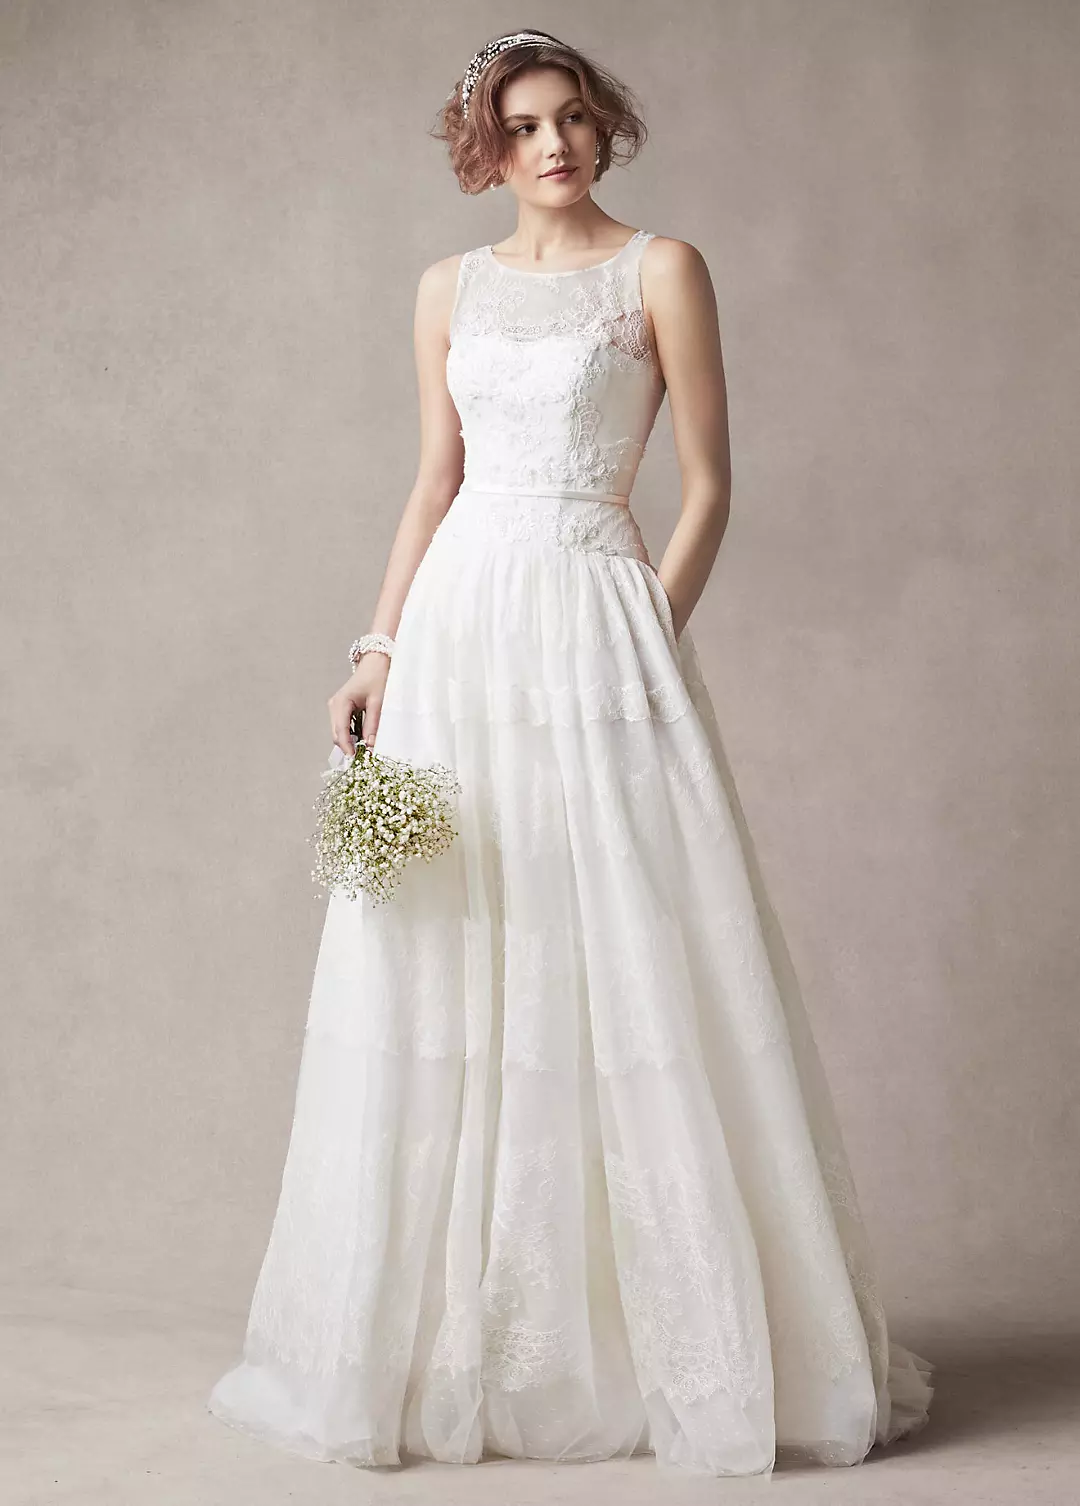 Melissa Sweet Sleeveless Wedding Dress with Tulle Image